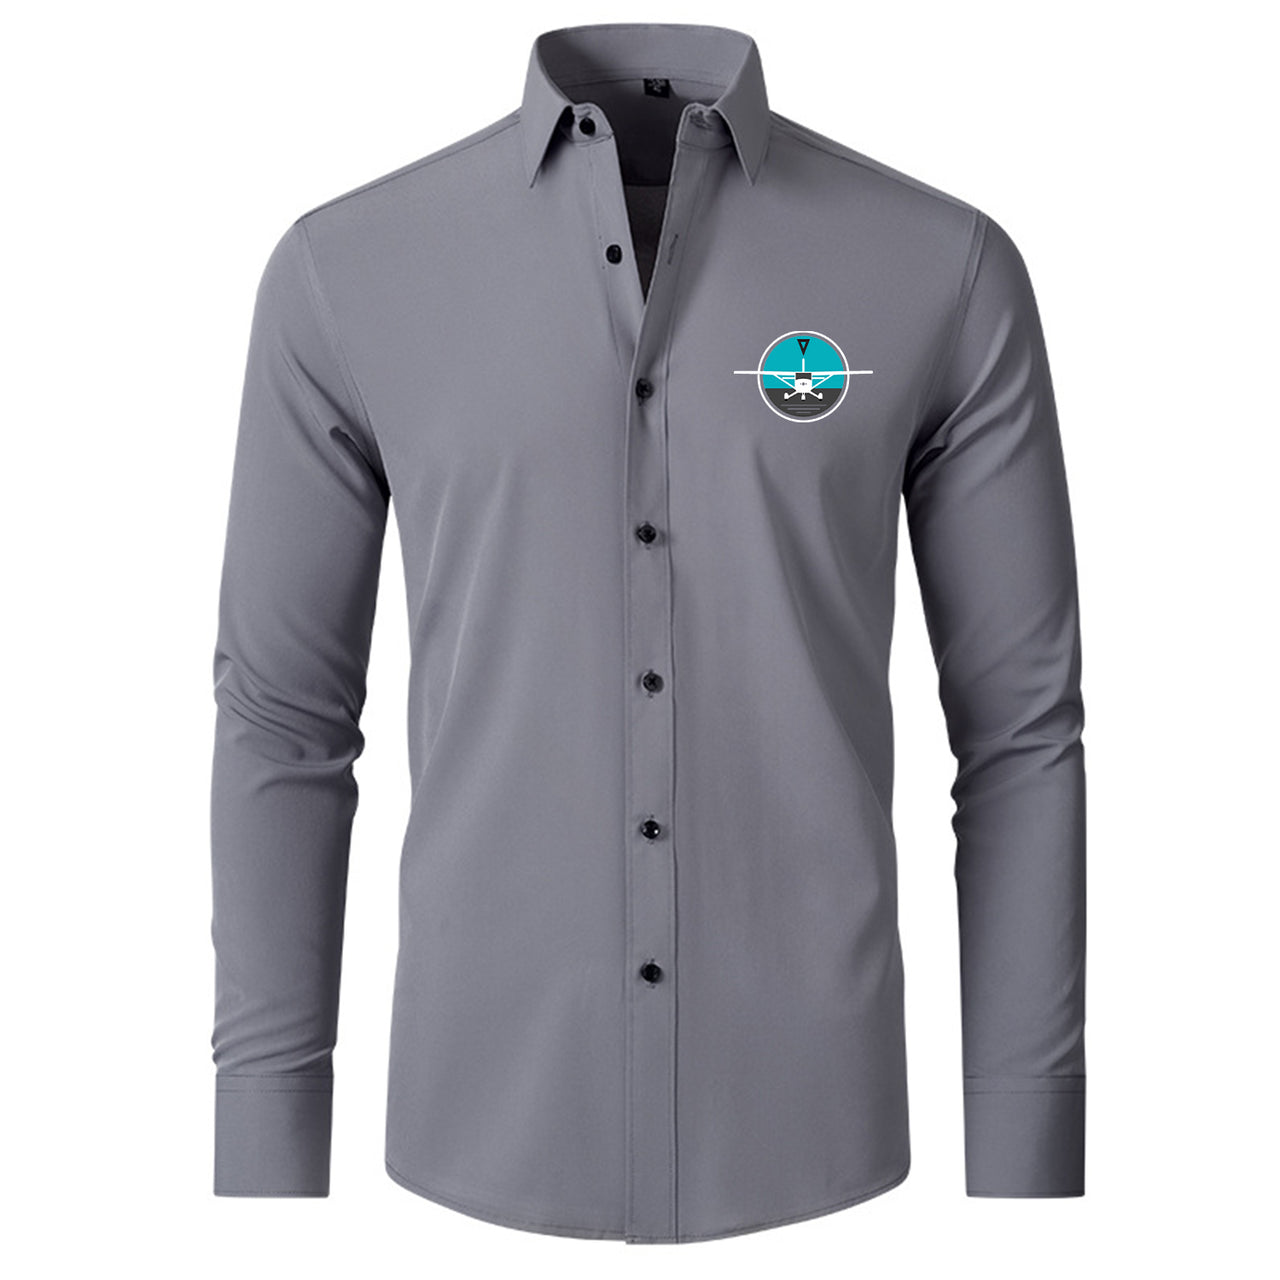 Cessna & Gyro Designed Long Sleeve Shirts